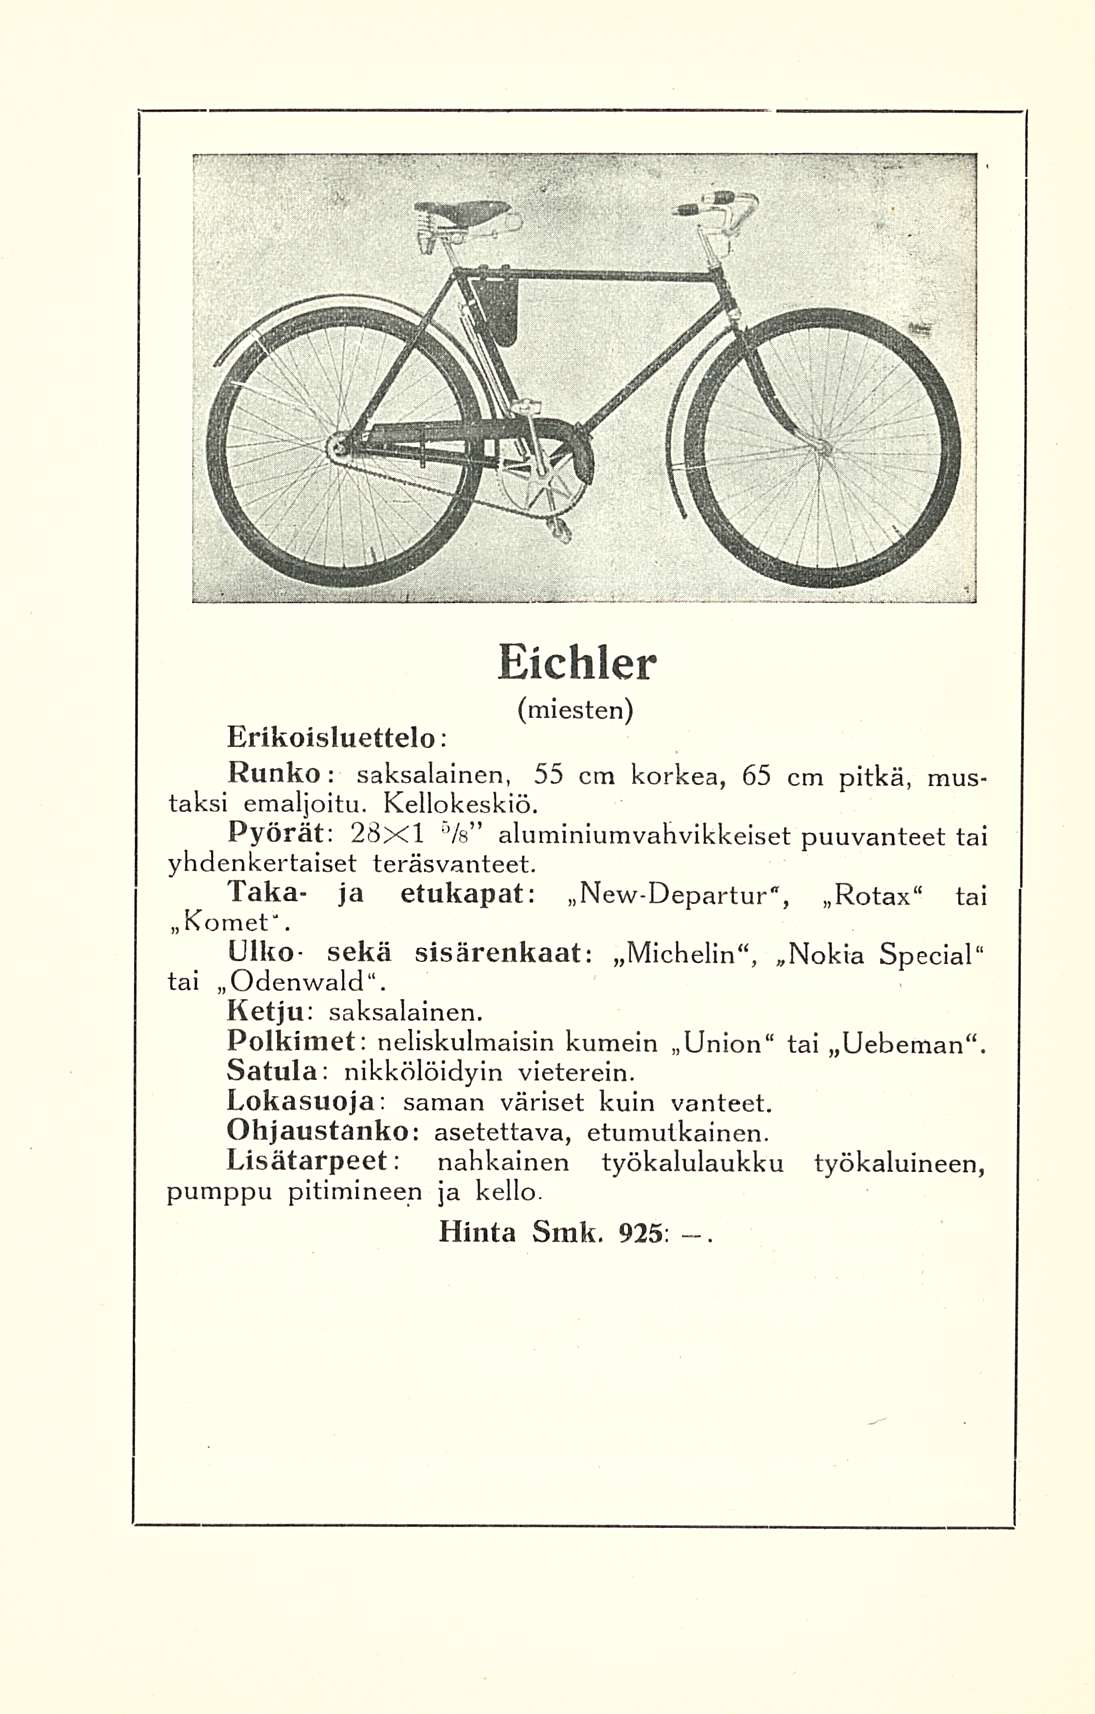 Eichler (miesten) Erikoisluettelo; Runko saksalainen, 55 : cm korkea, 65 cm pitkä, mustaksi emaljoitu. Kellokeskiö. Pyörät: 28x1 5 /s aluminiumvahvikkeiset puuvanteet tai yhdenkertaiset teräsvanteet.